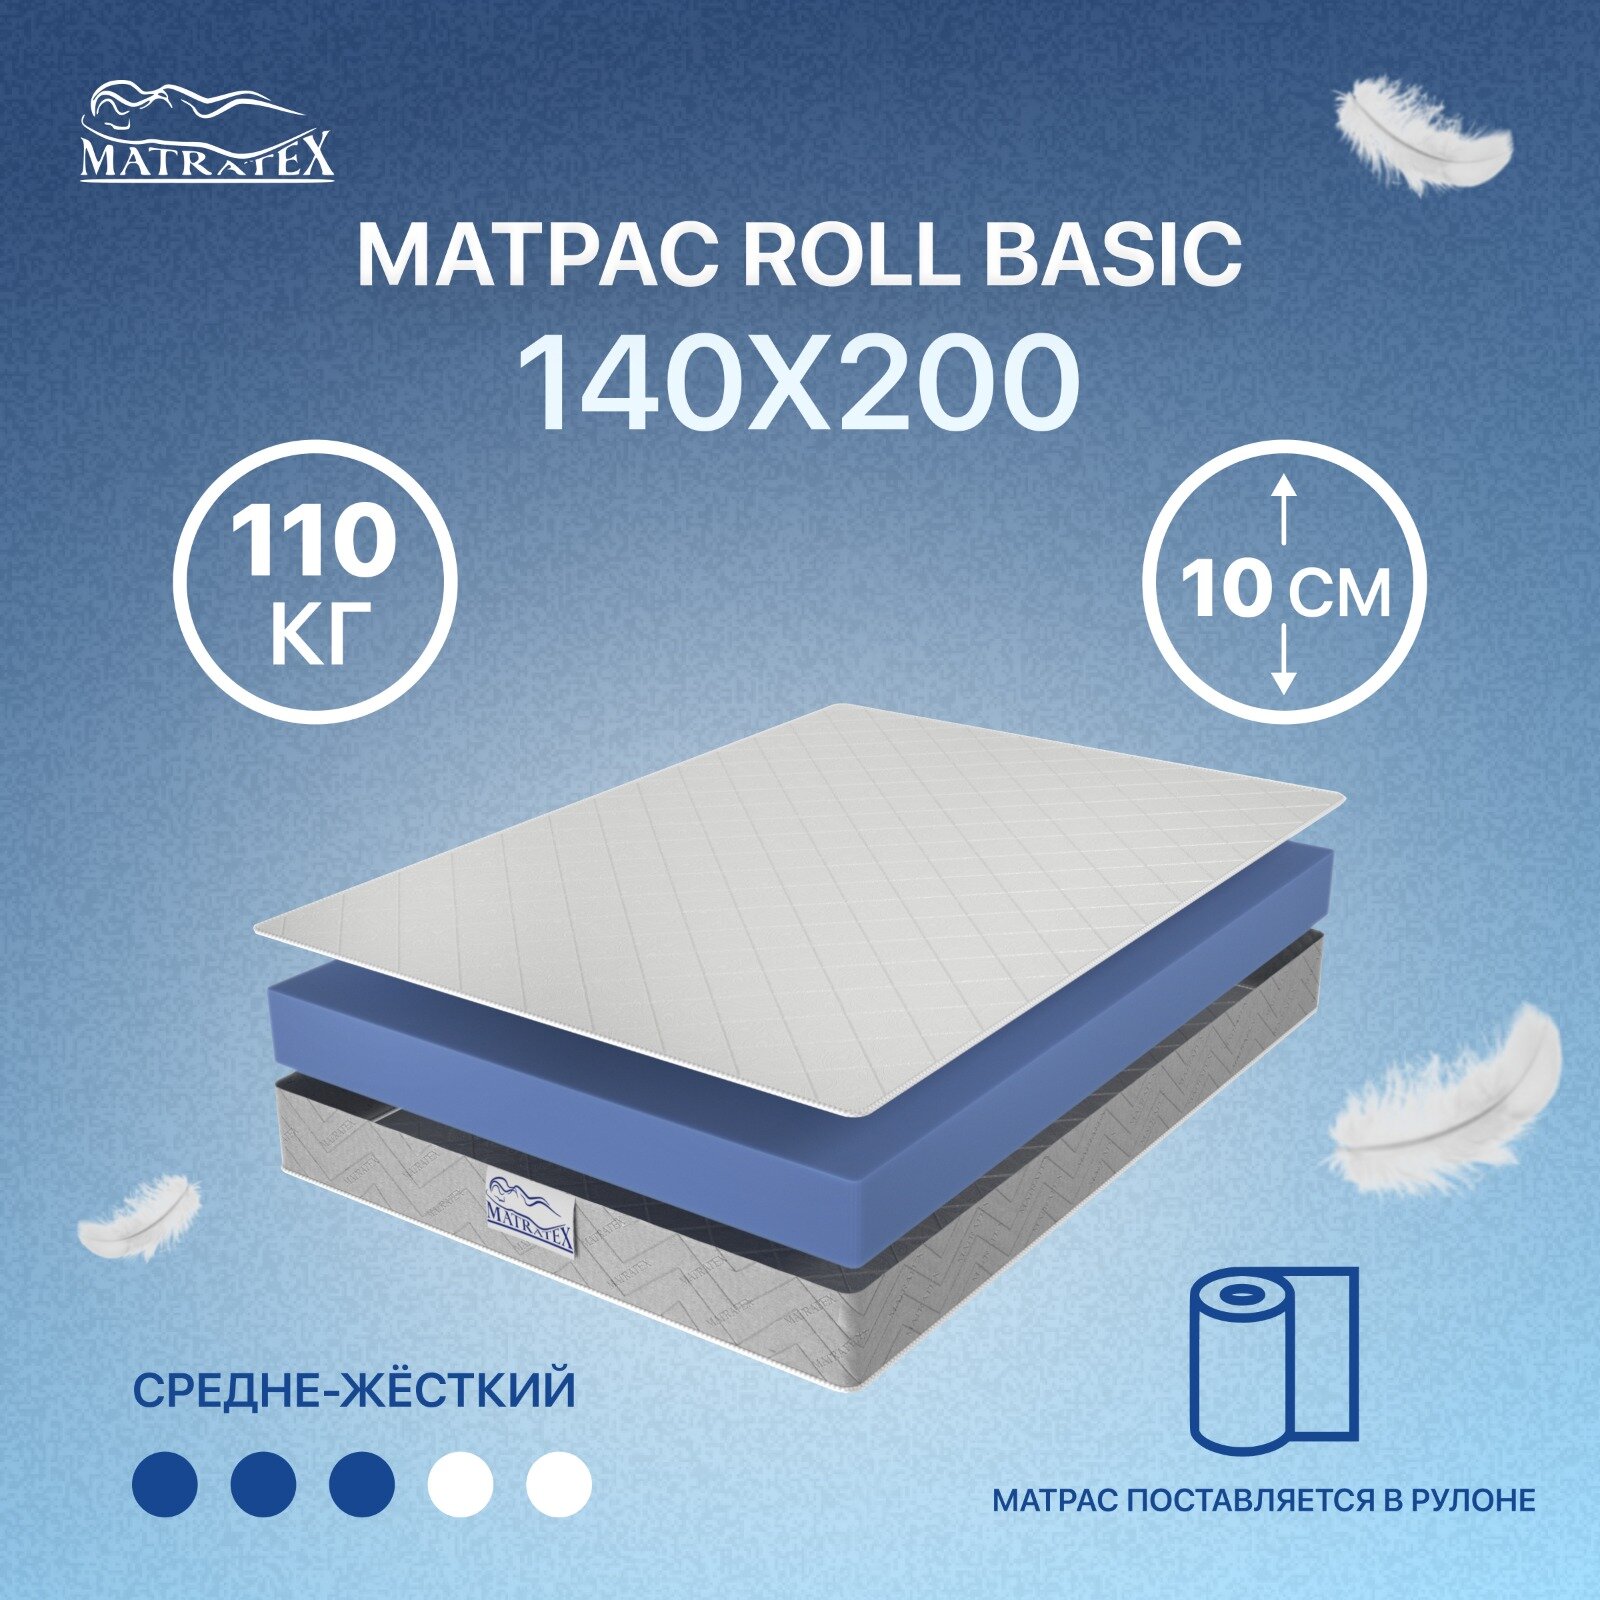 Матрас ROLL BASIC 140х200